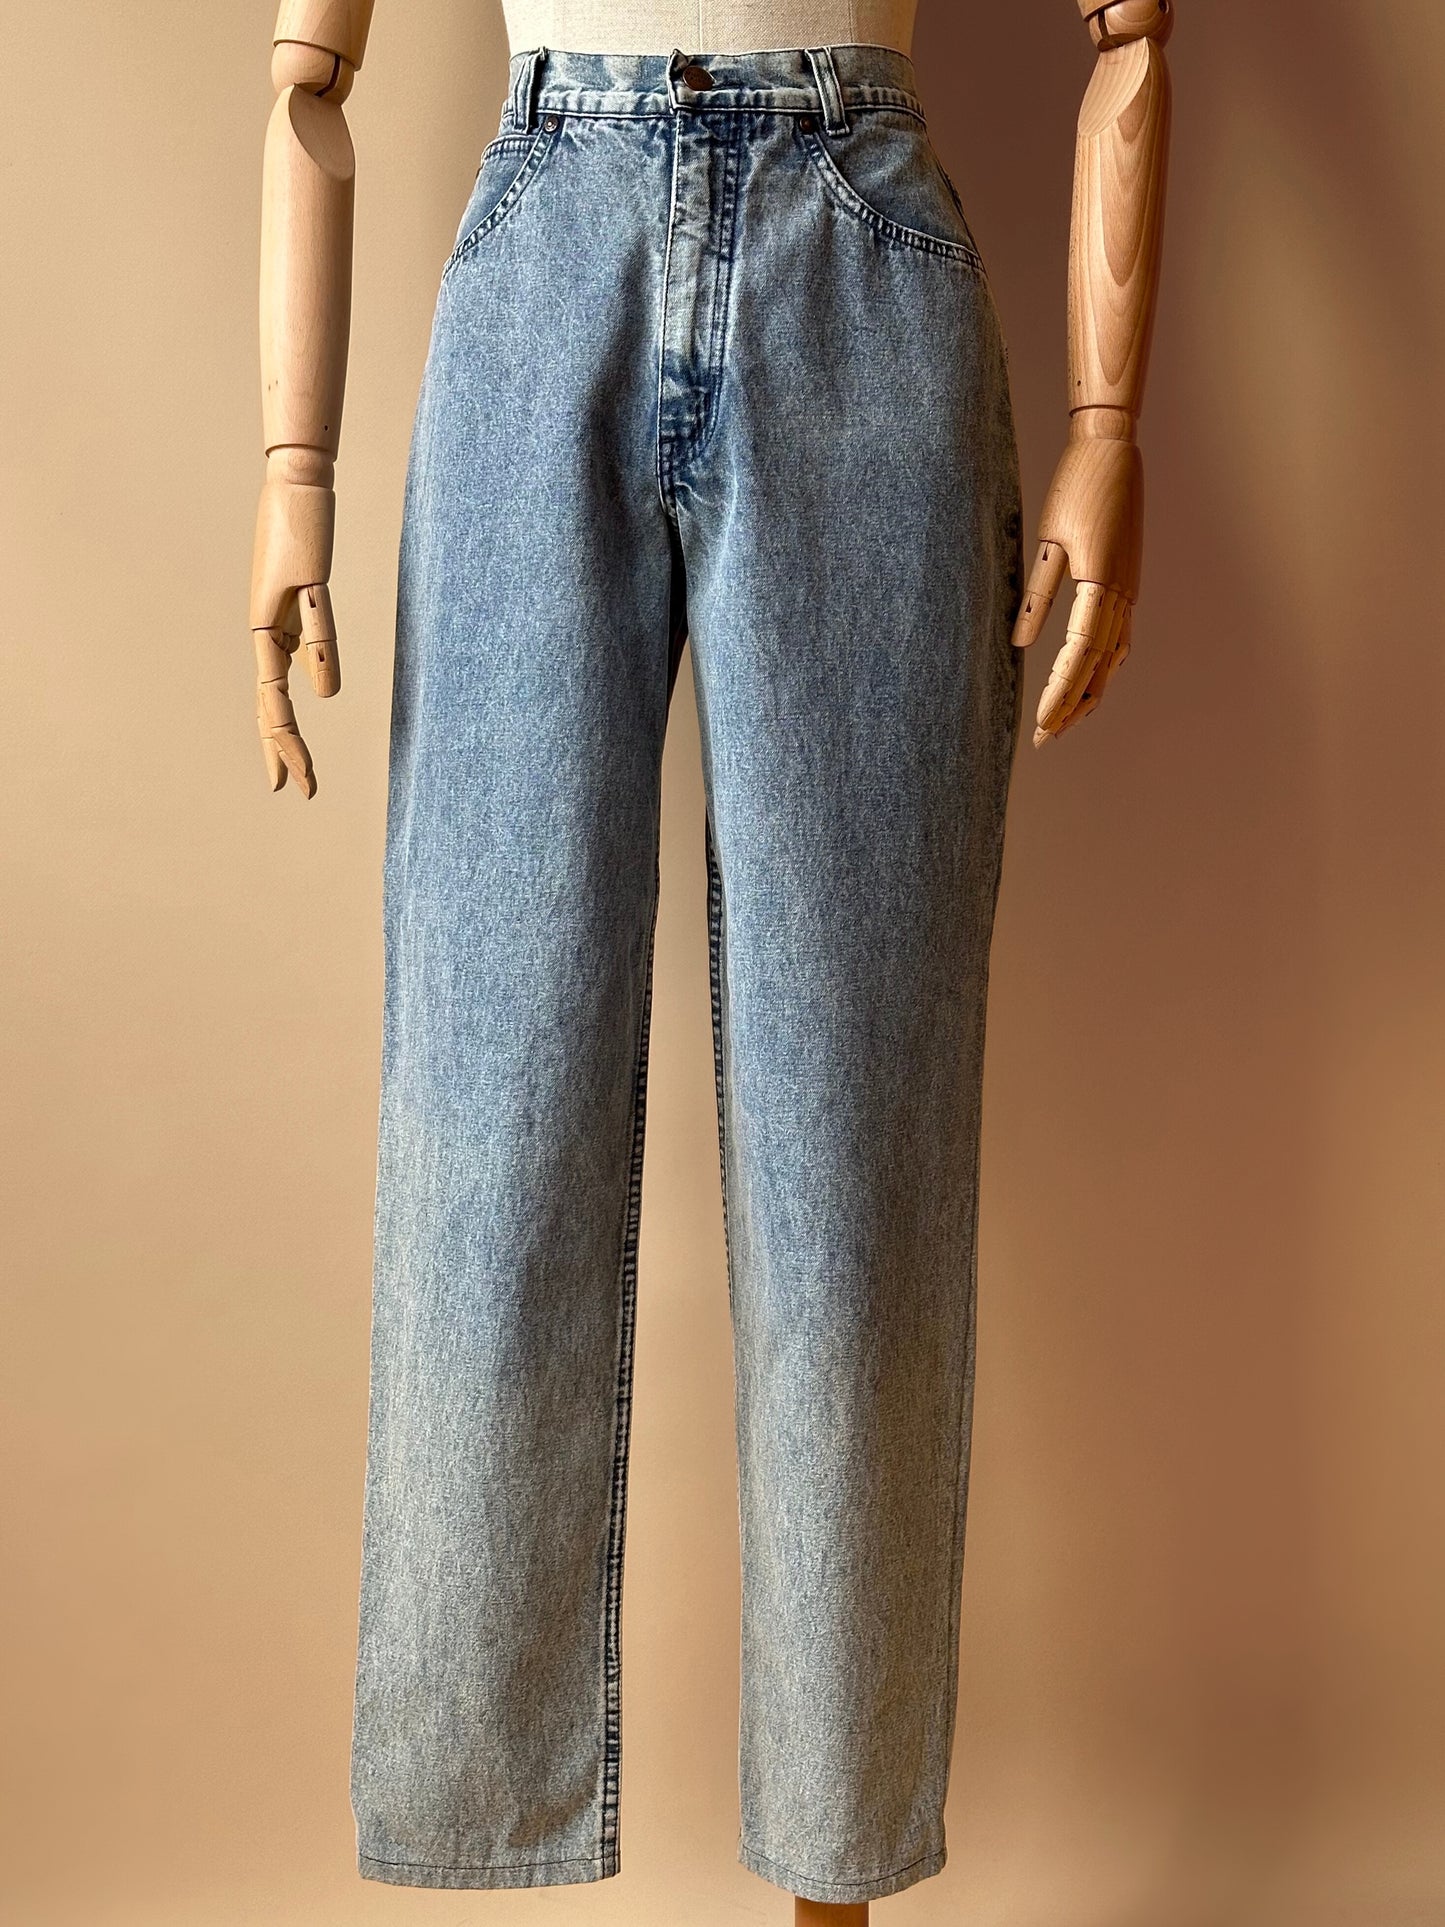 Vintage Missoni Light Bue Jeans